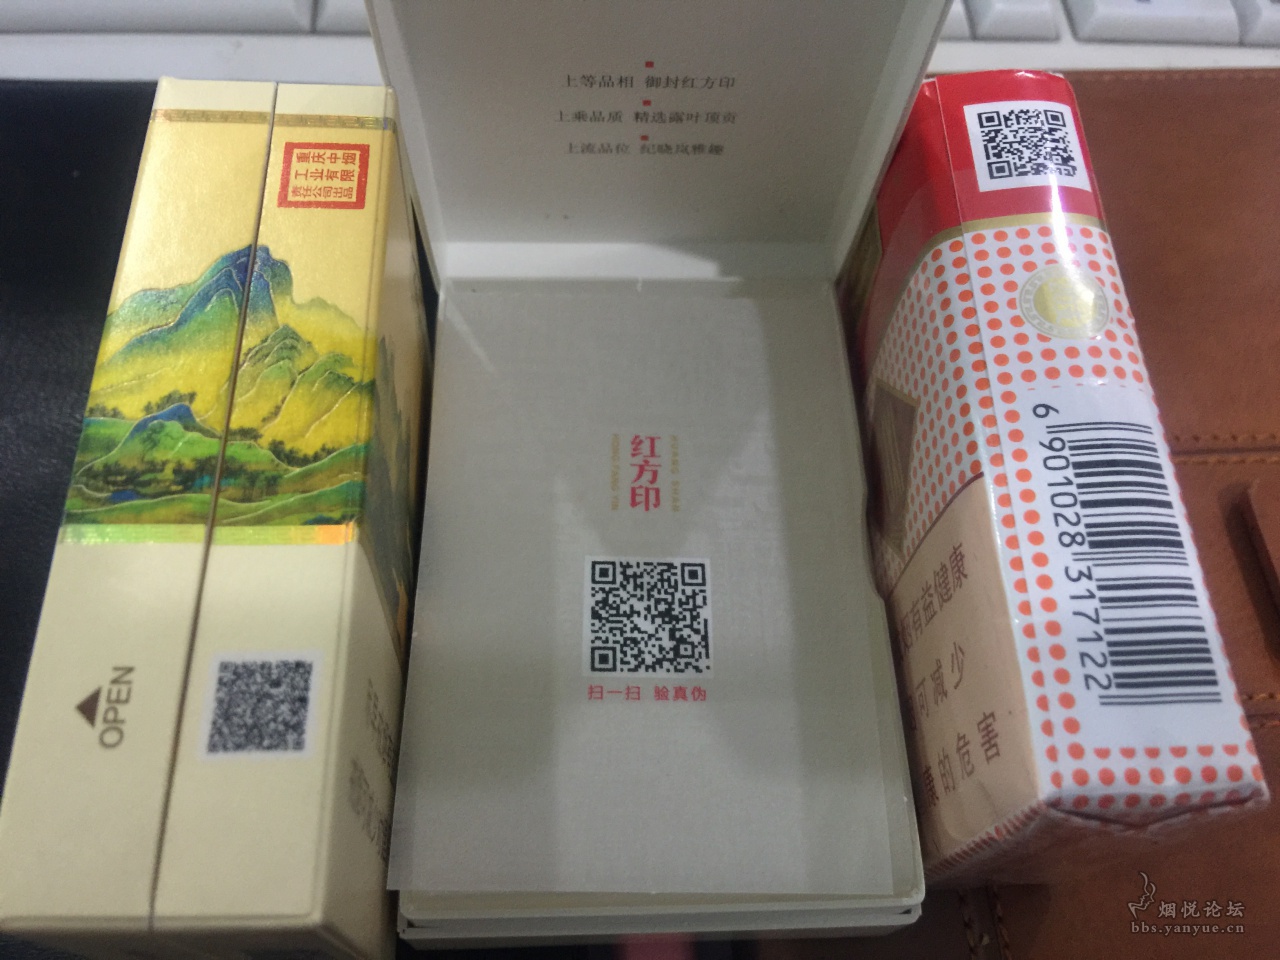 北京公交印刷有限公司二维码-二维码信息查询公示系统